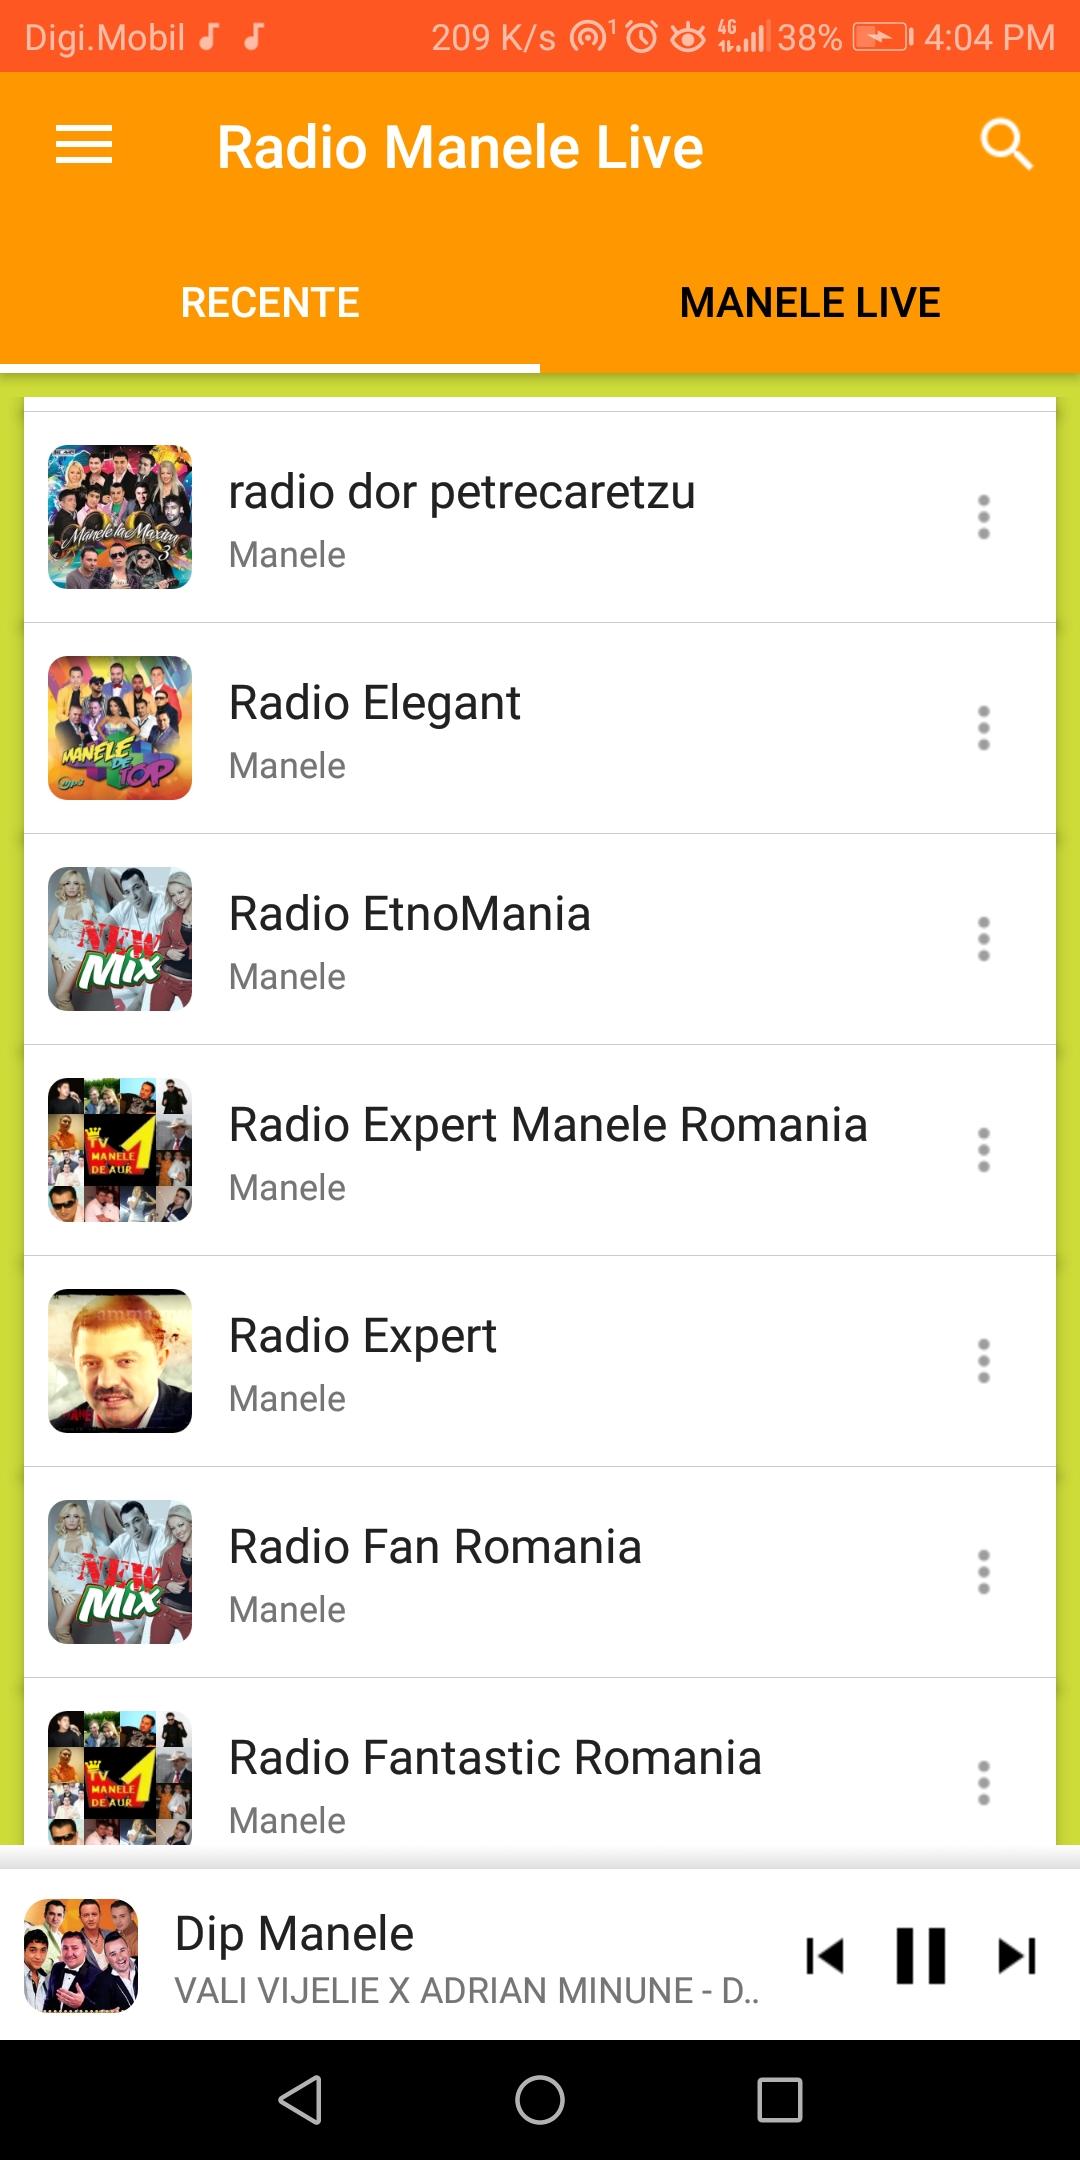 Radio Manele Live Online APK 1.4 für Android herunterladen – Die neueste  Verion von Radio Manele Live Online APK herunterladen - APKFab.com